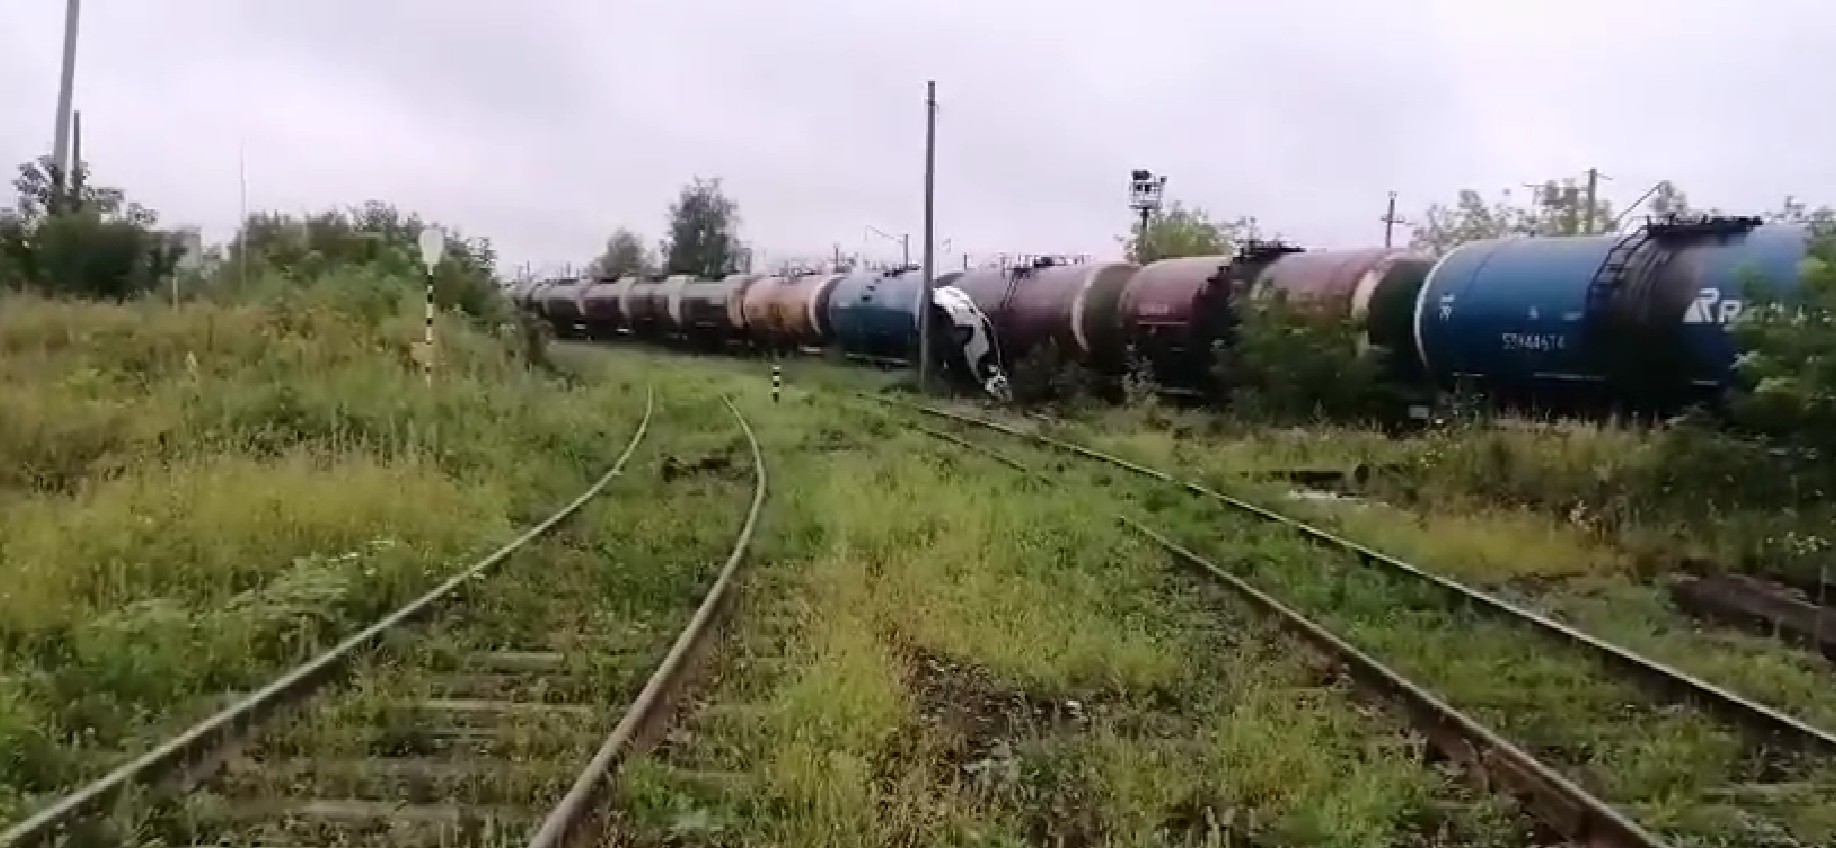 Автомобиль вылетел с трассы и врезался в поезд в Дзержинске